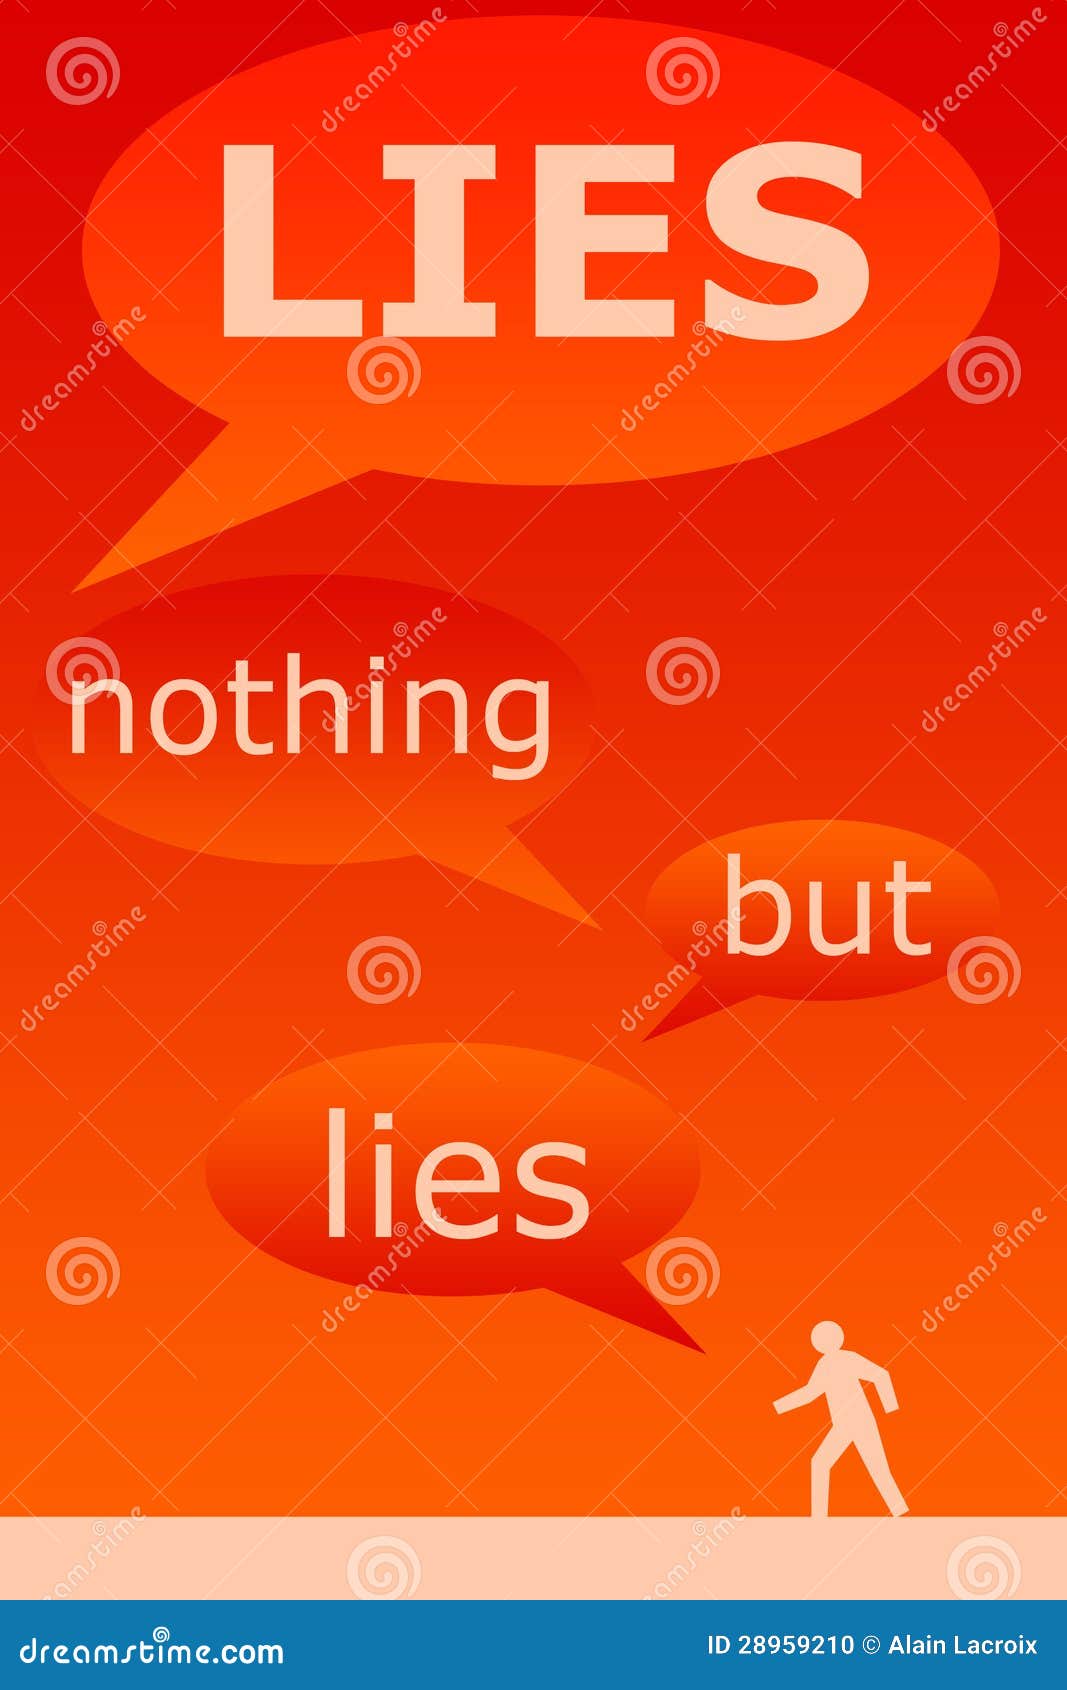 all lies